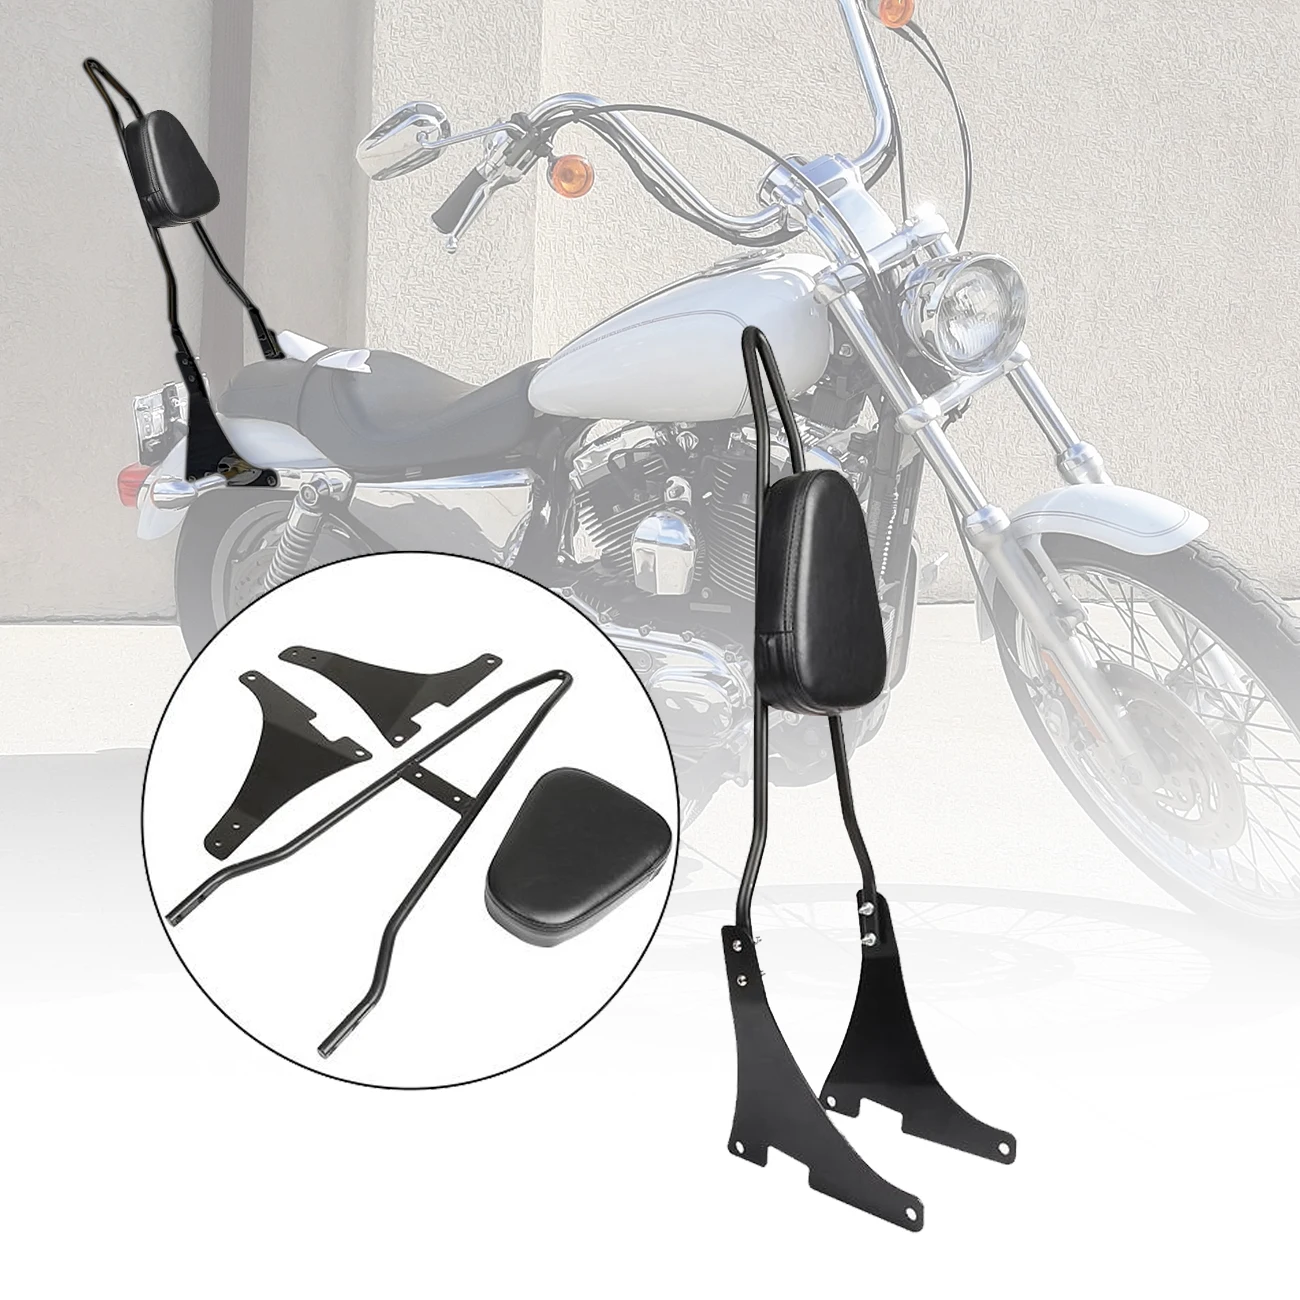 

Спинка для пассажирского мотоцикла, комплект для Harley Davidson Sportster XL883C XL883R XL1200R XL1200C XL1200S 2004-2020